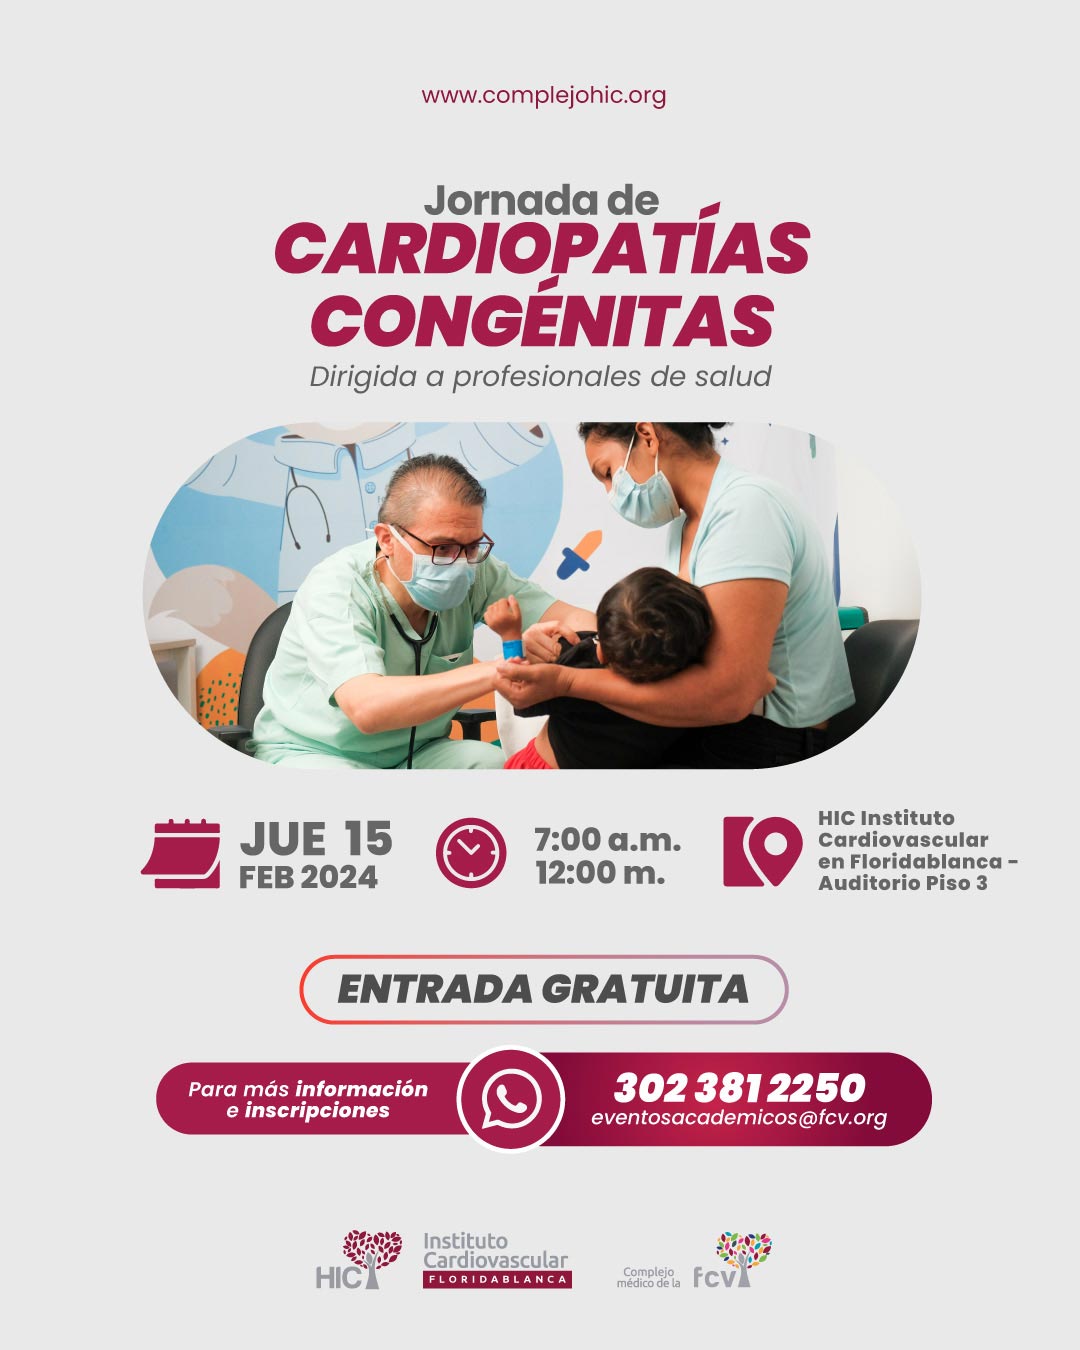 Jornada de Cardiopatías Congénitas - Dirigida a profesionales de salud